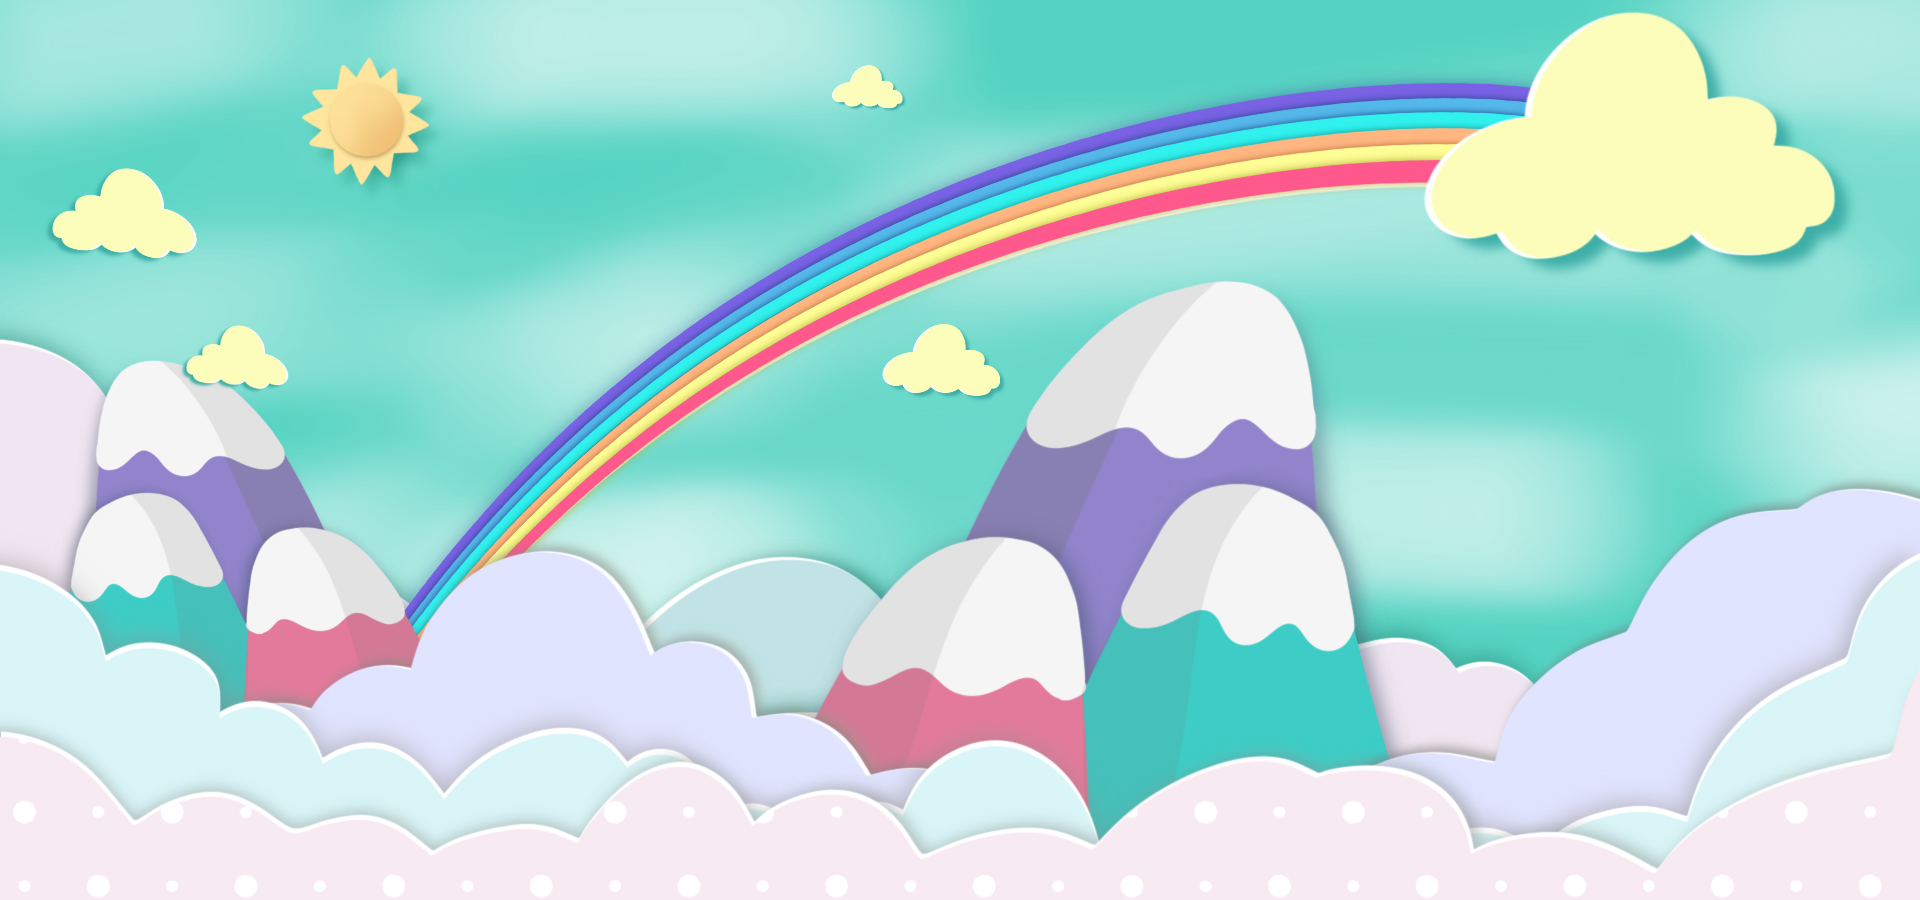 天空云朵彩虹自然剪纸风格背景图片